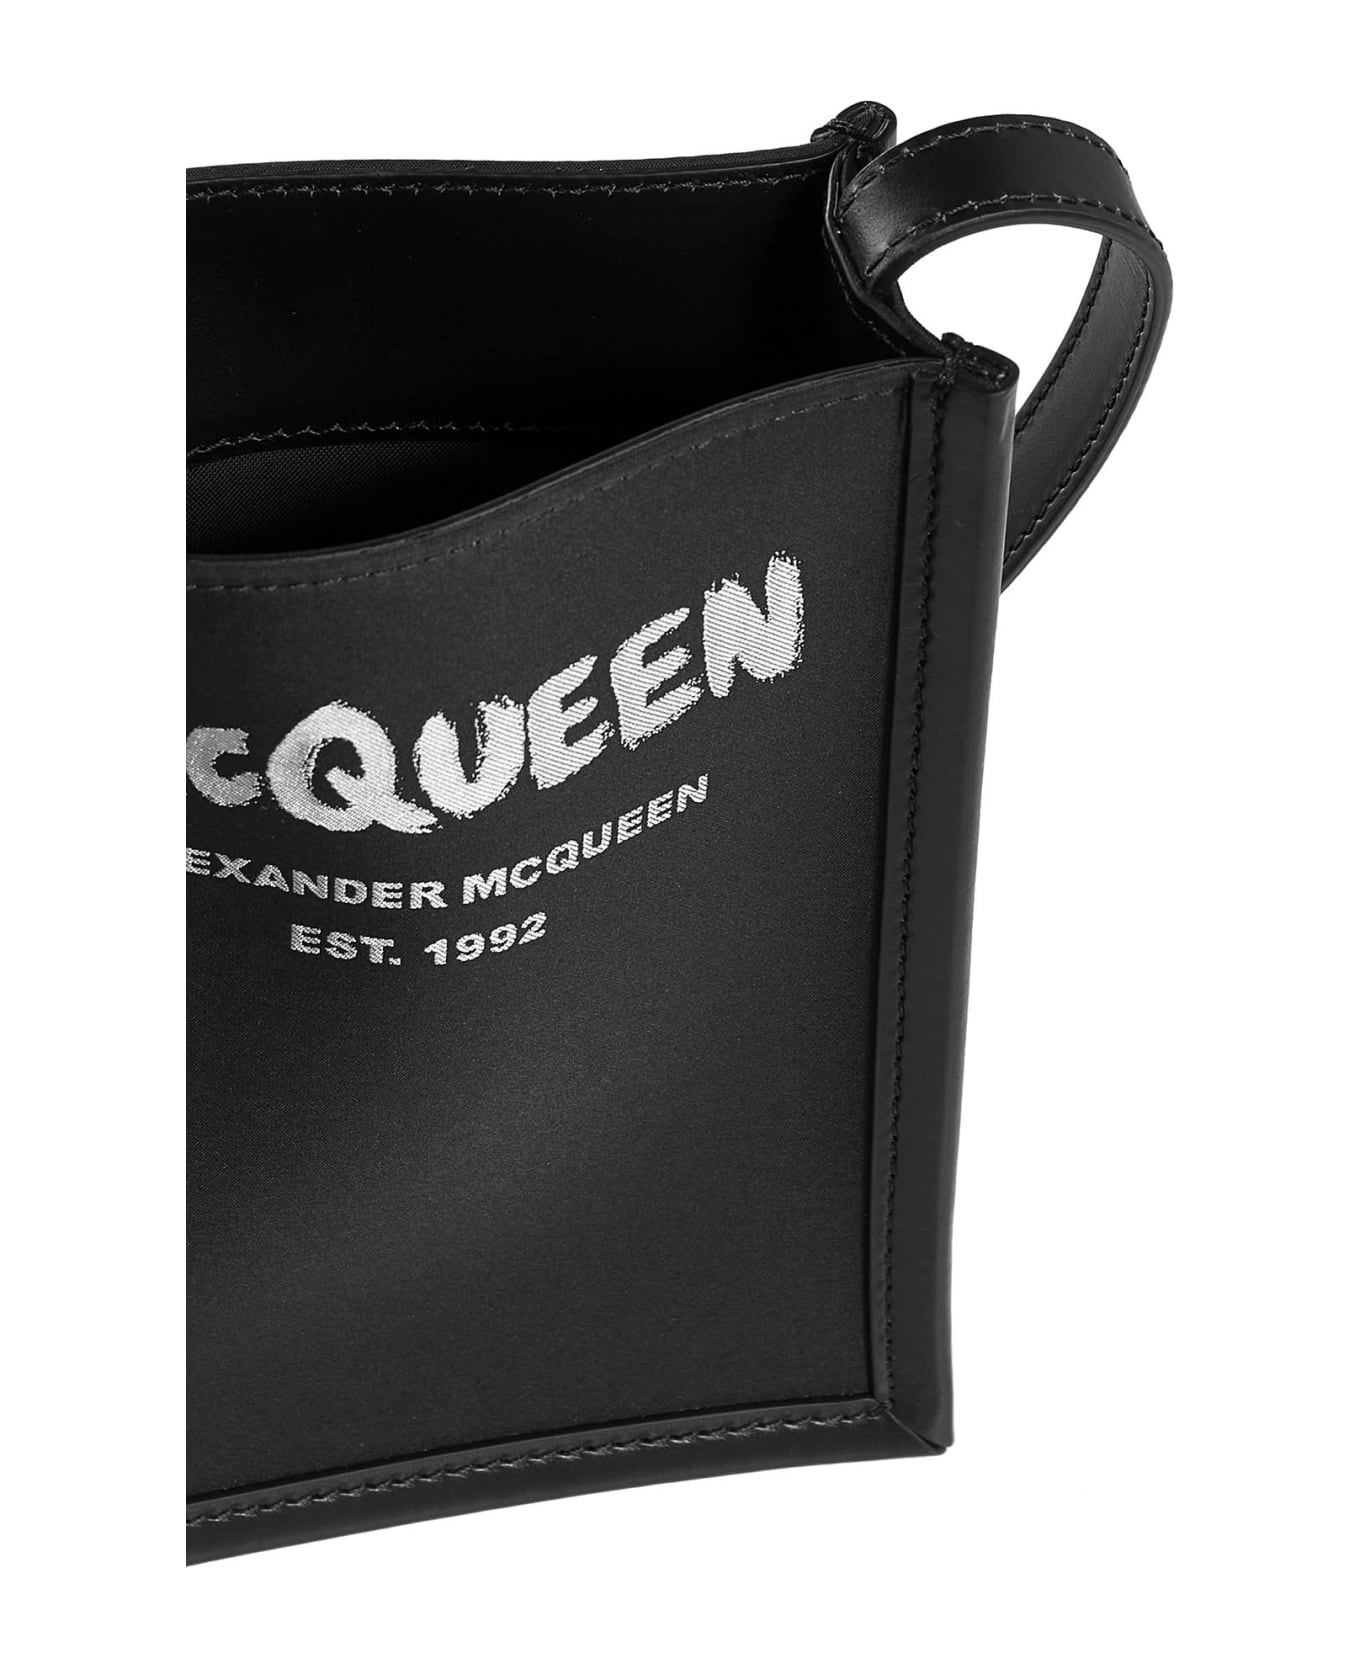 Alexander McQueen Shoulder Bag - Black off white